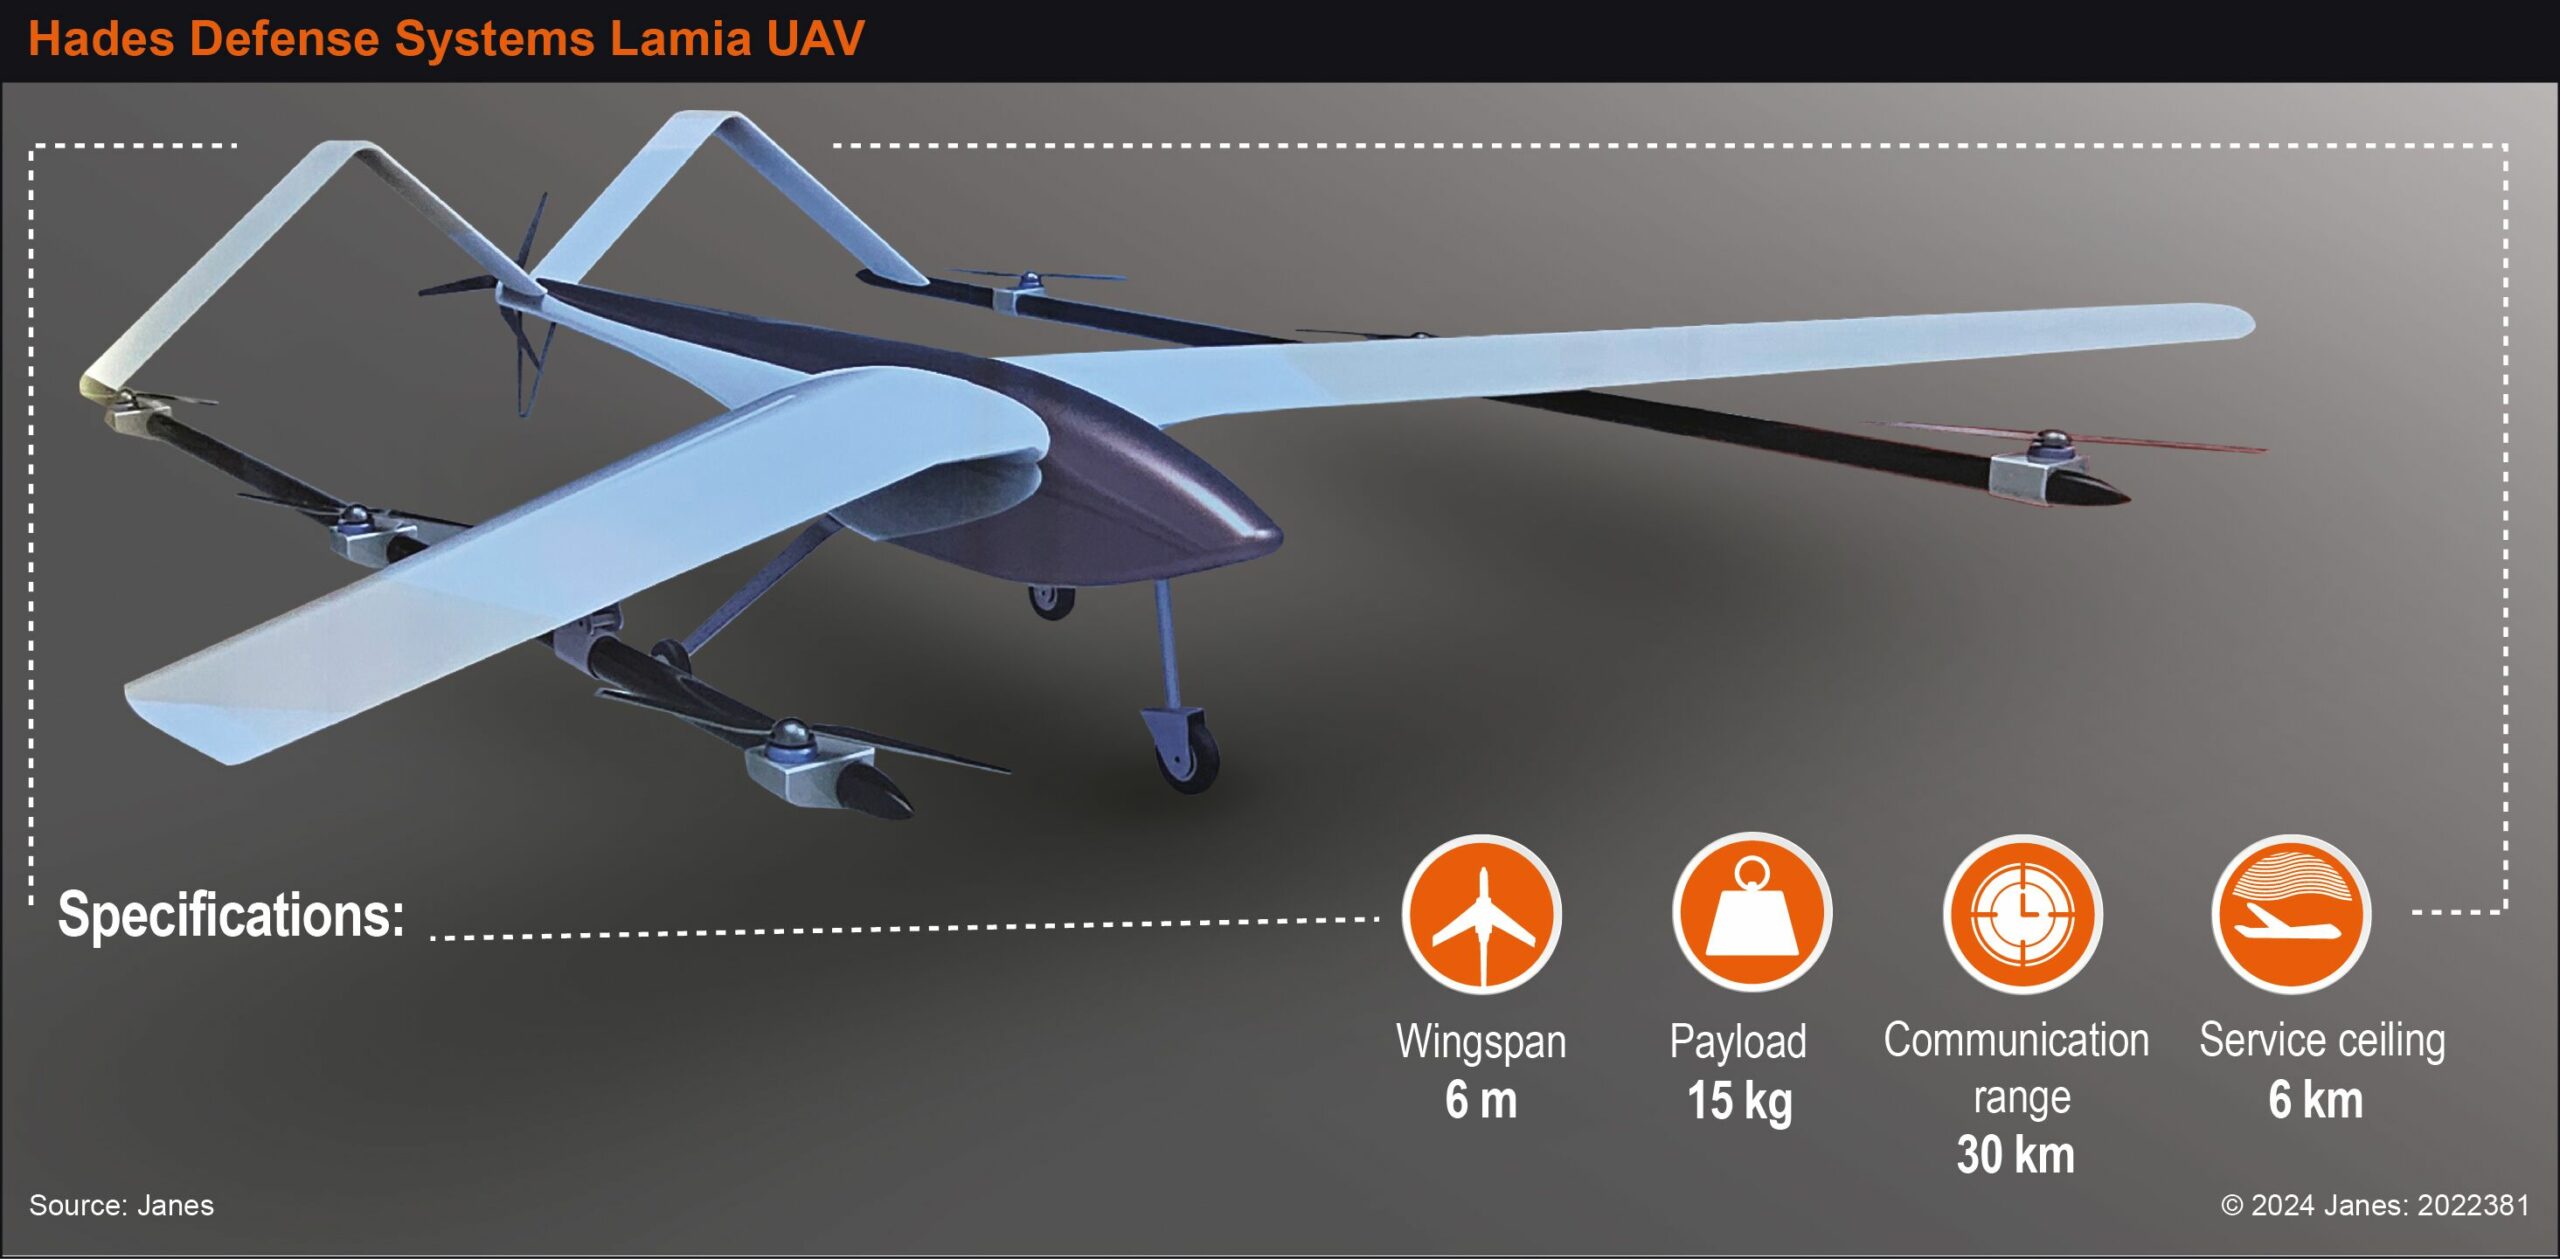 UMEX 2024: A Hades Defense Systems Lamia többcélú UAV-t fejleszt